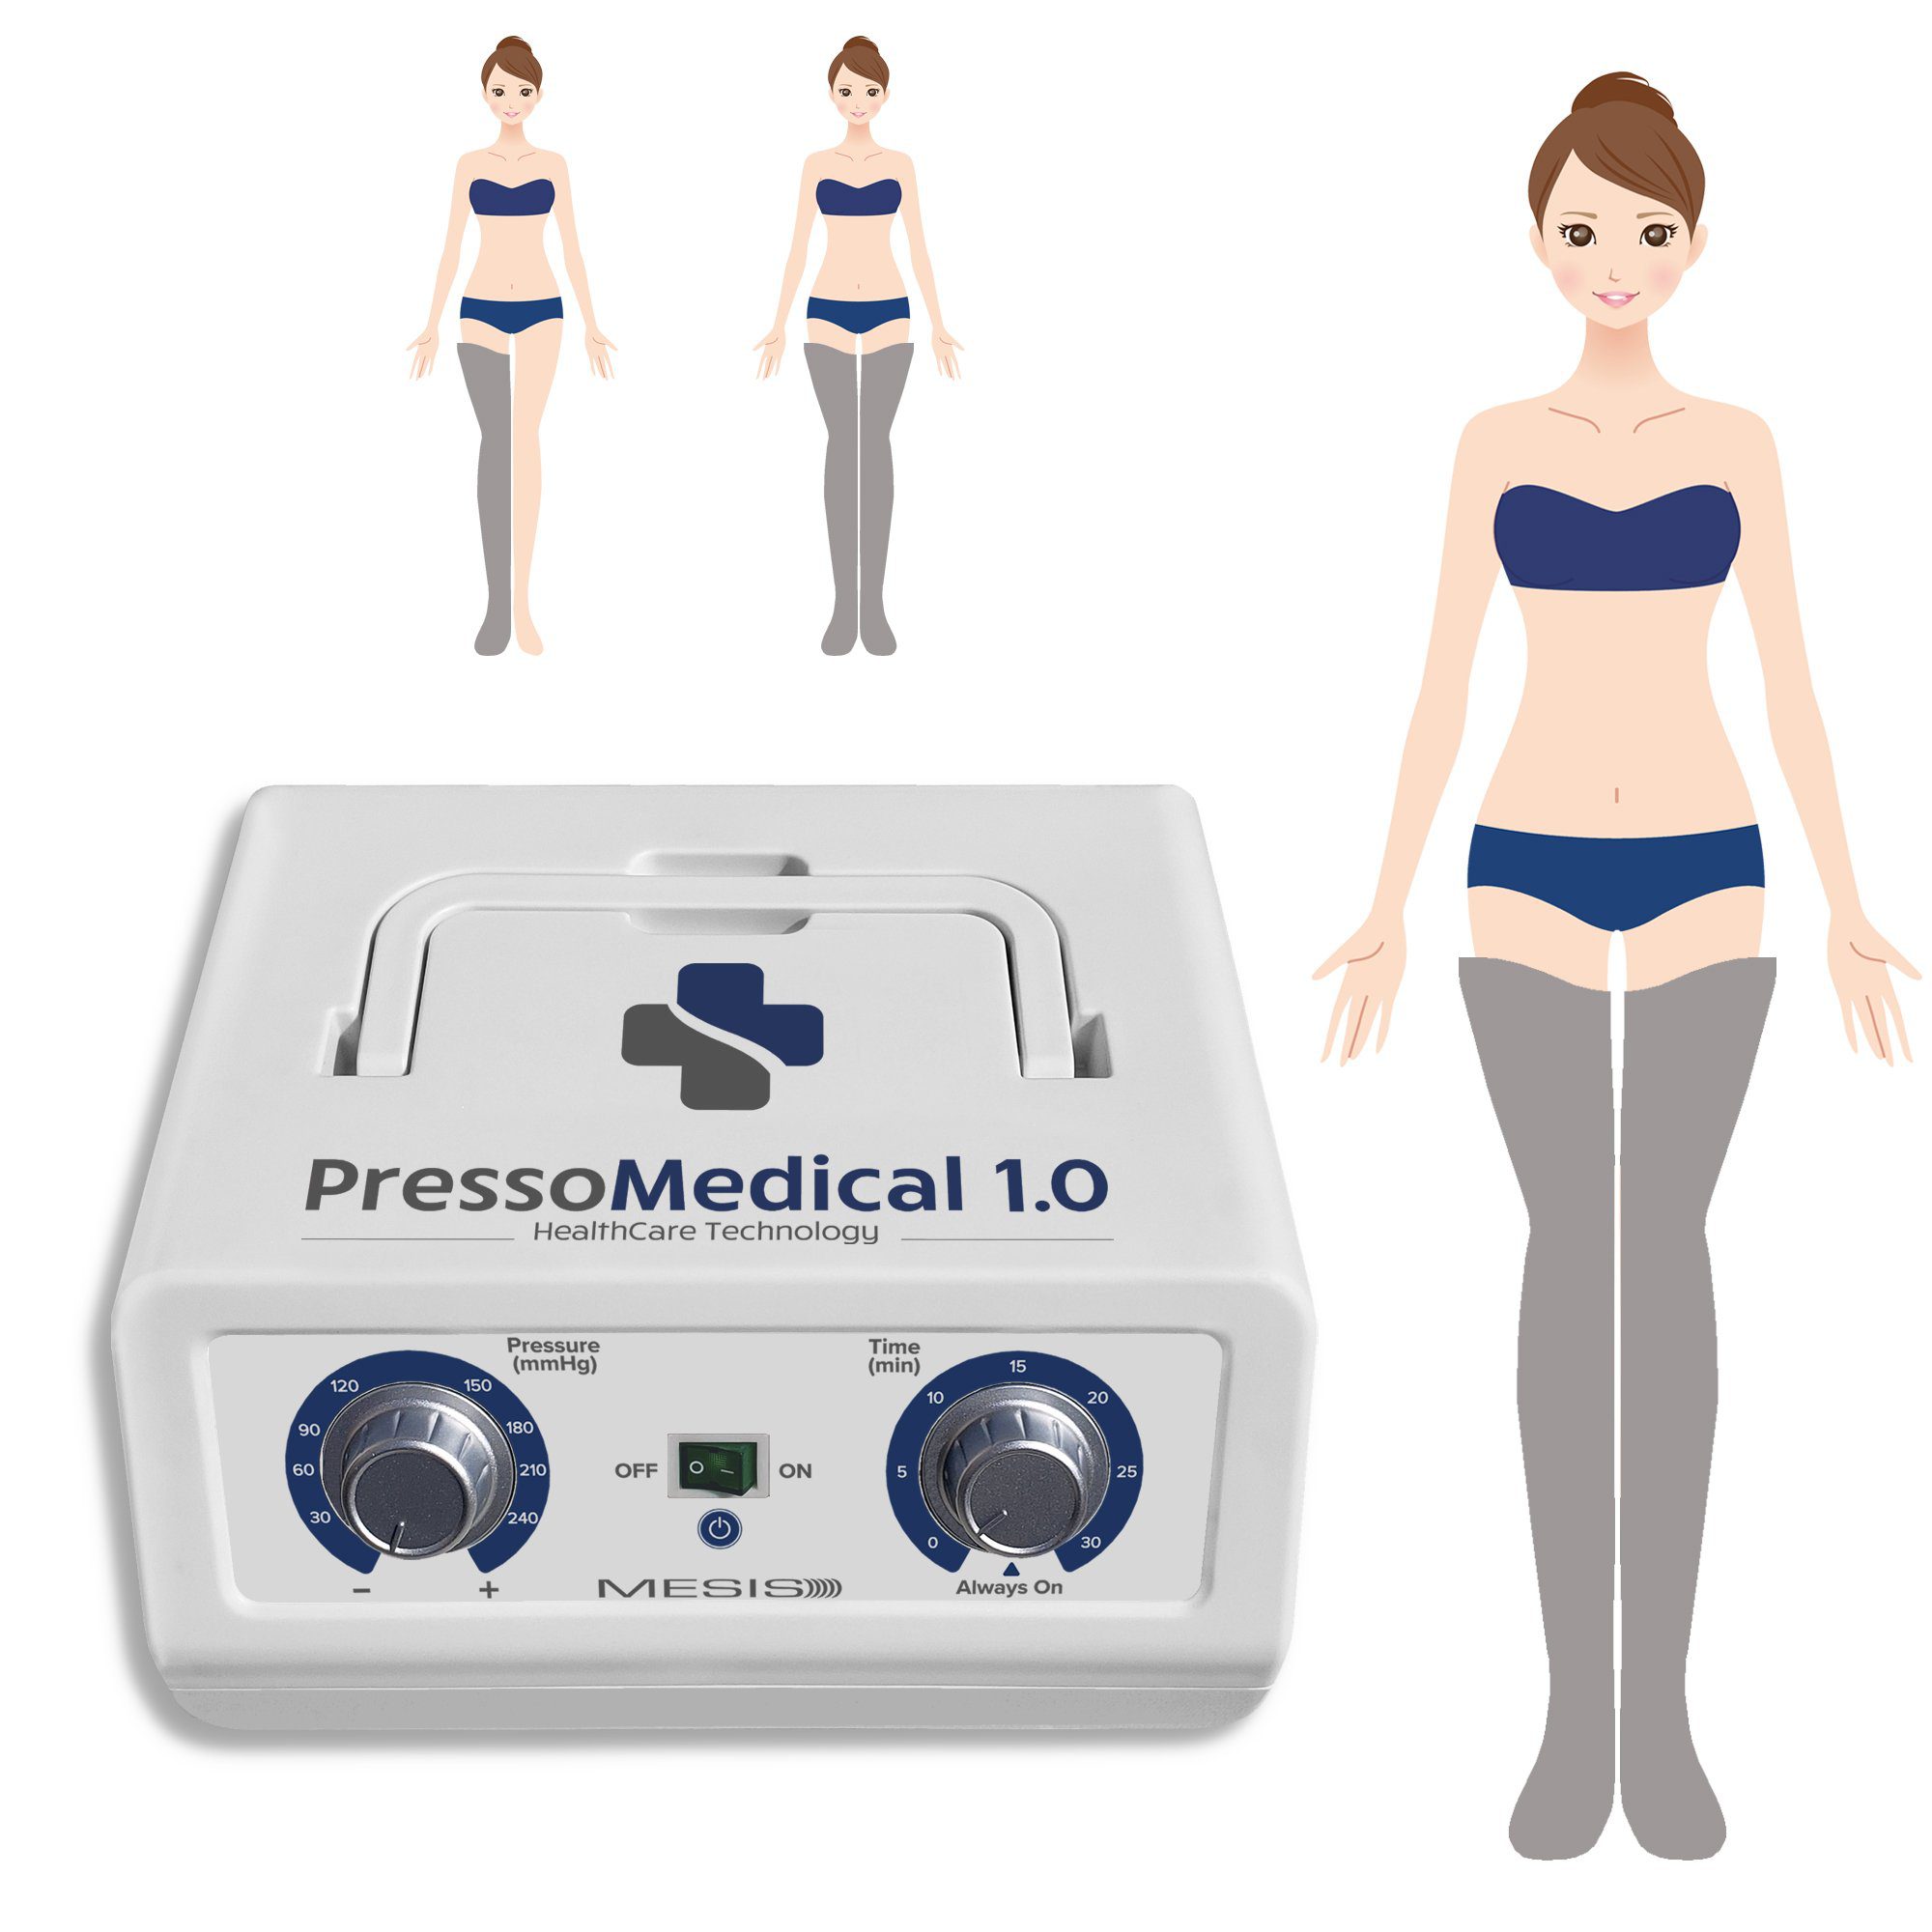 Pressoterapia PressoMedical 1.0 Basic con 2 gambali